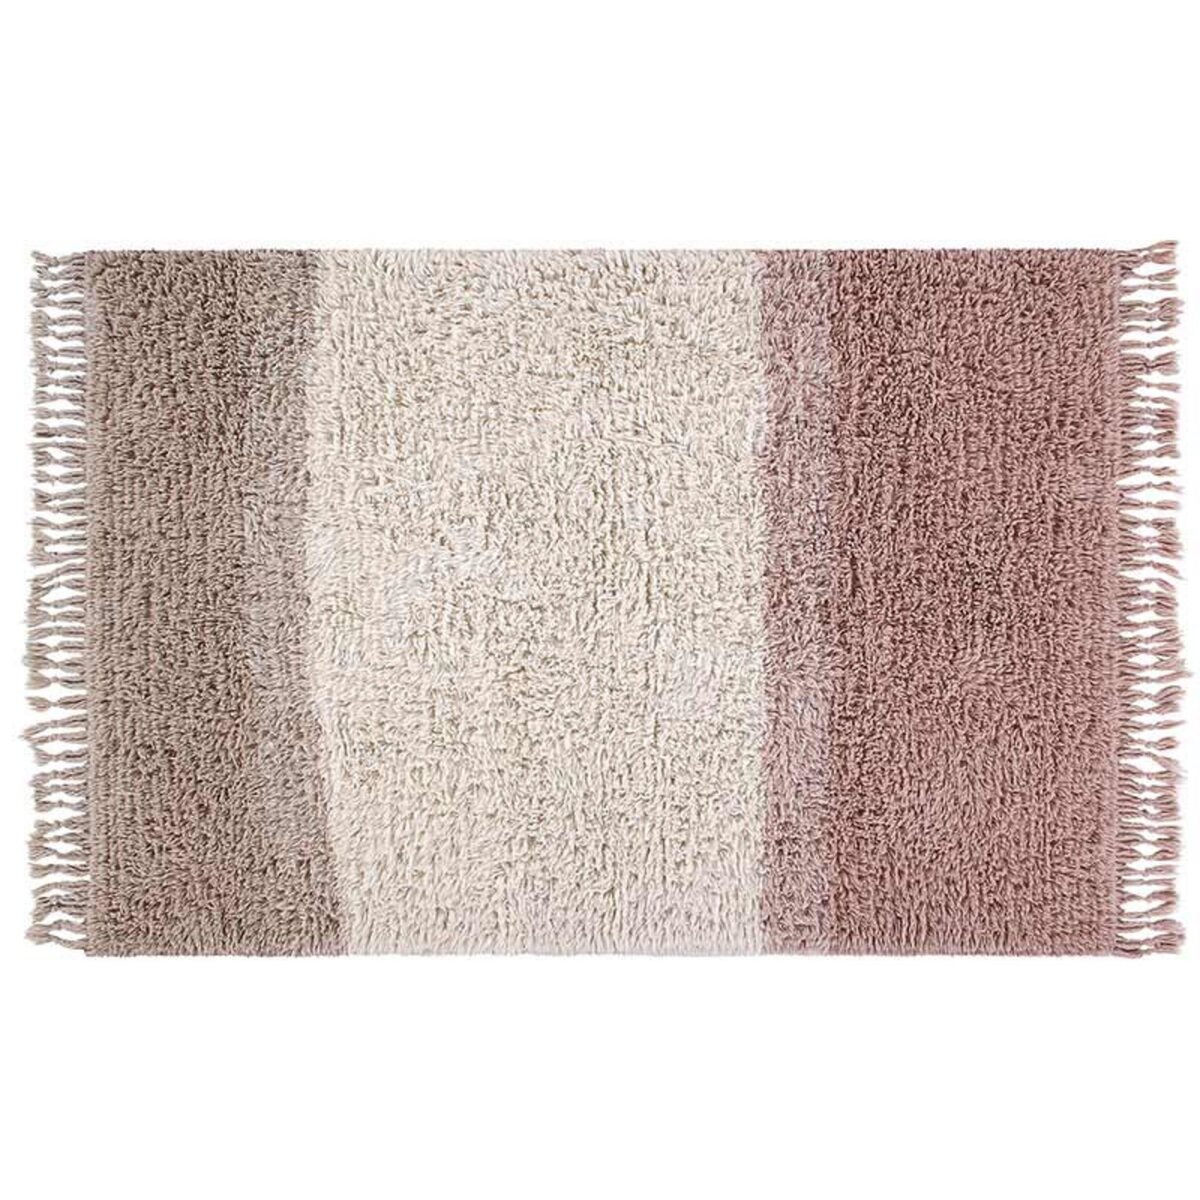 Lorena Canals Tapis laine rose dégradé - 200 x 300 cm